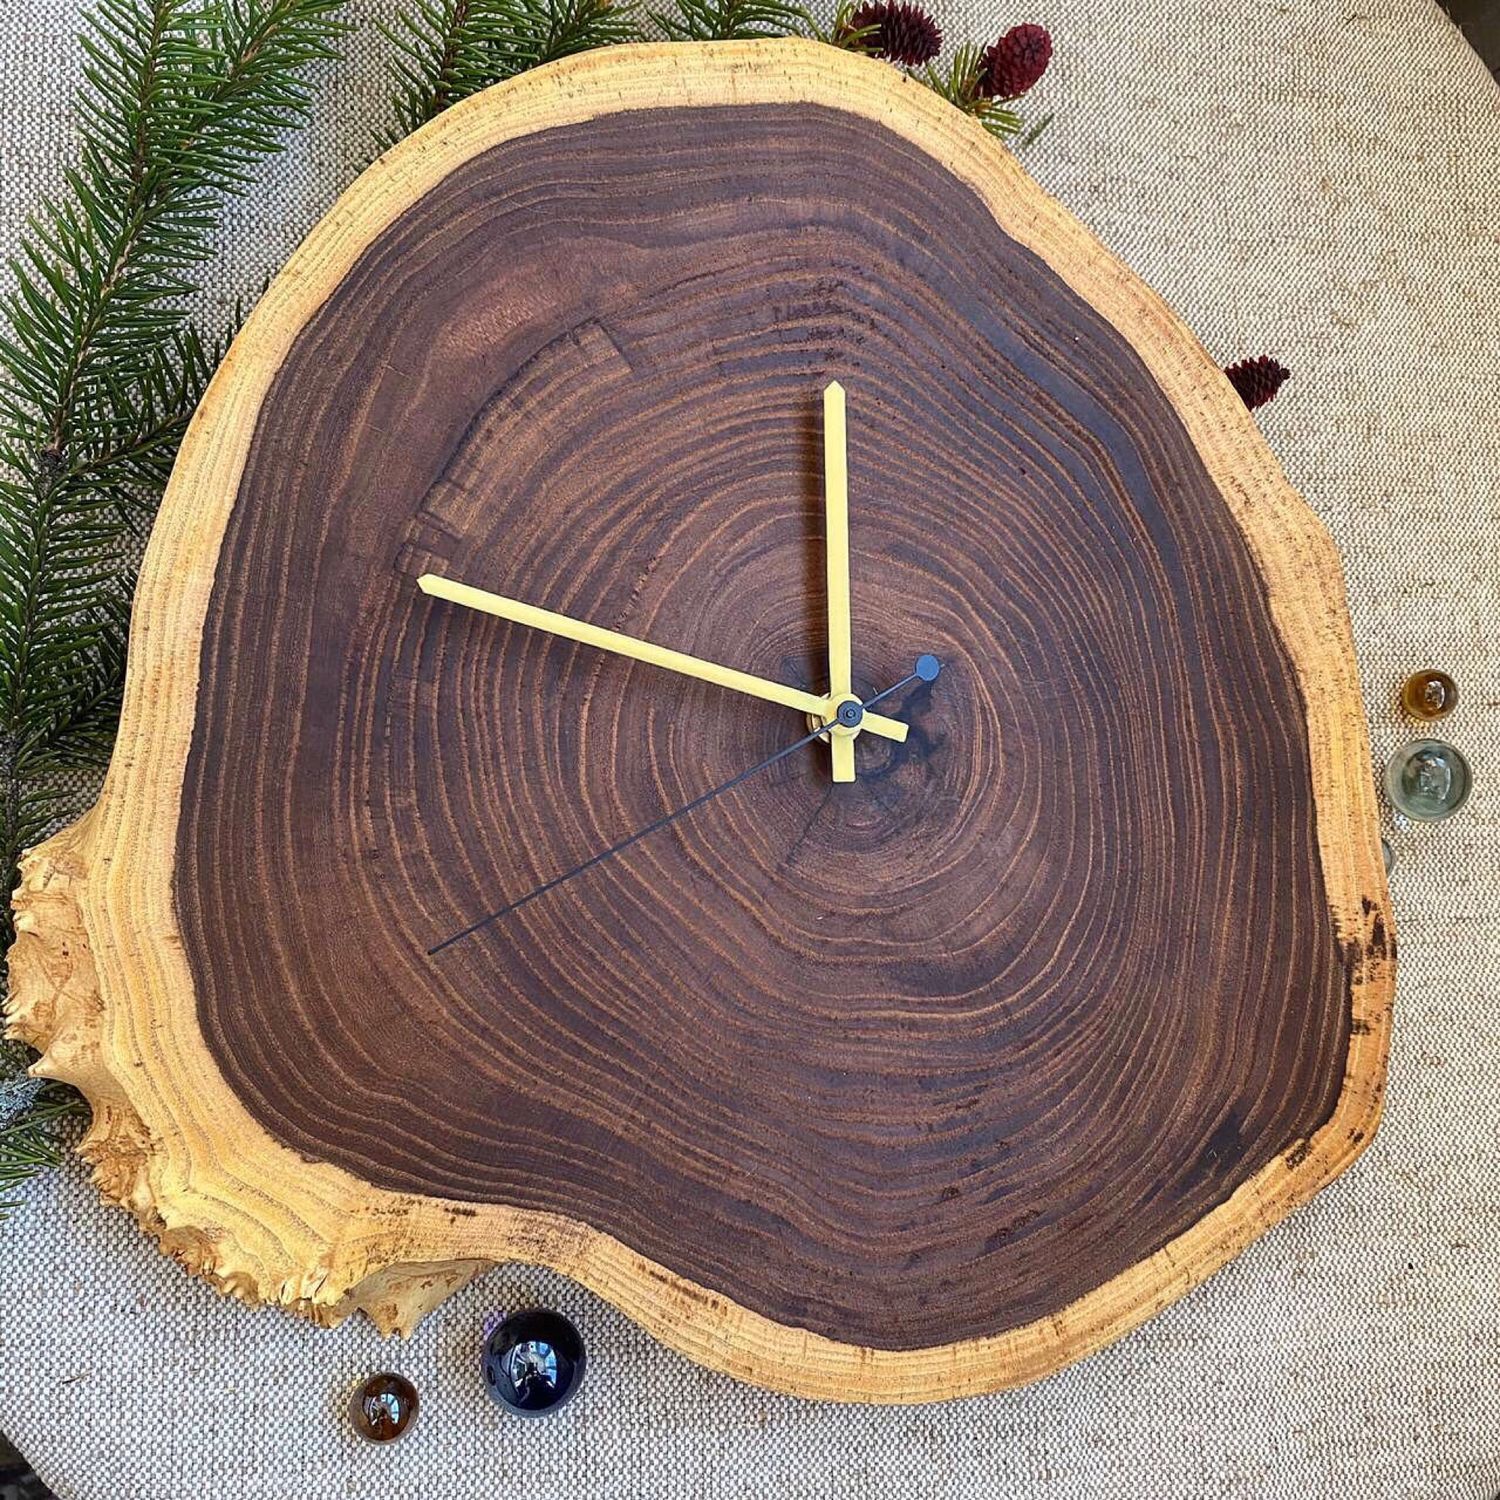 Часы из дерева фото